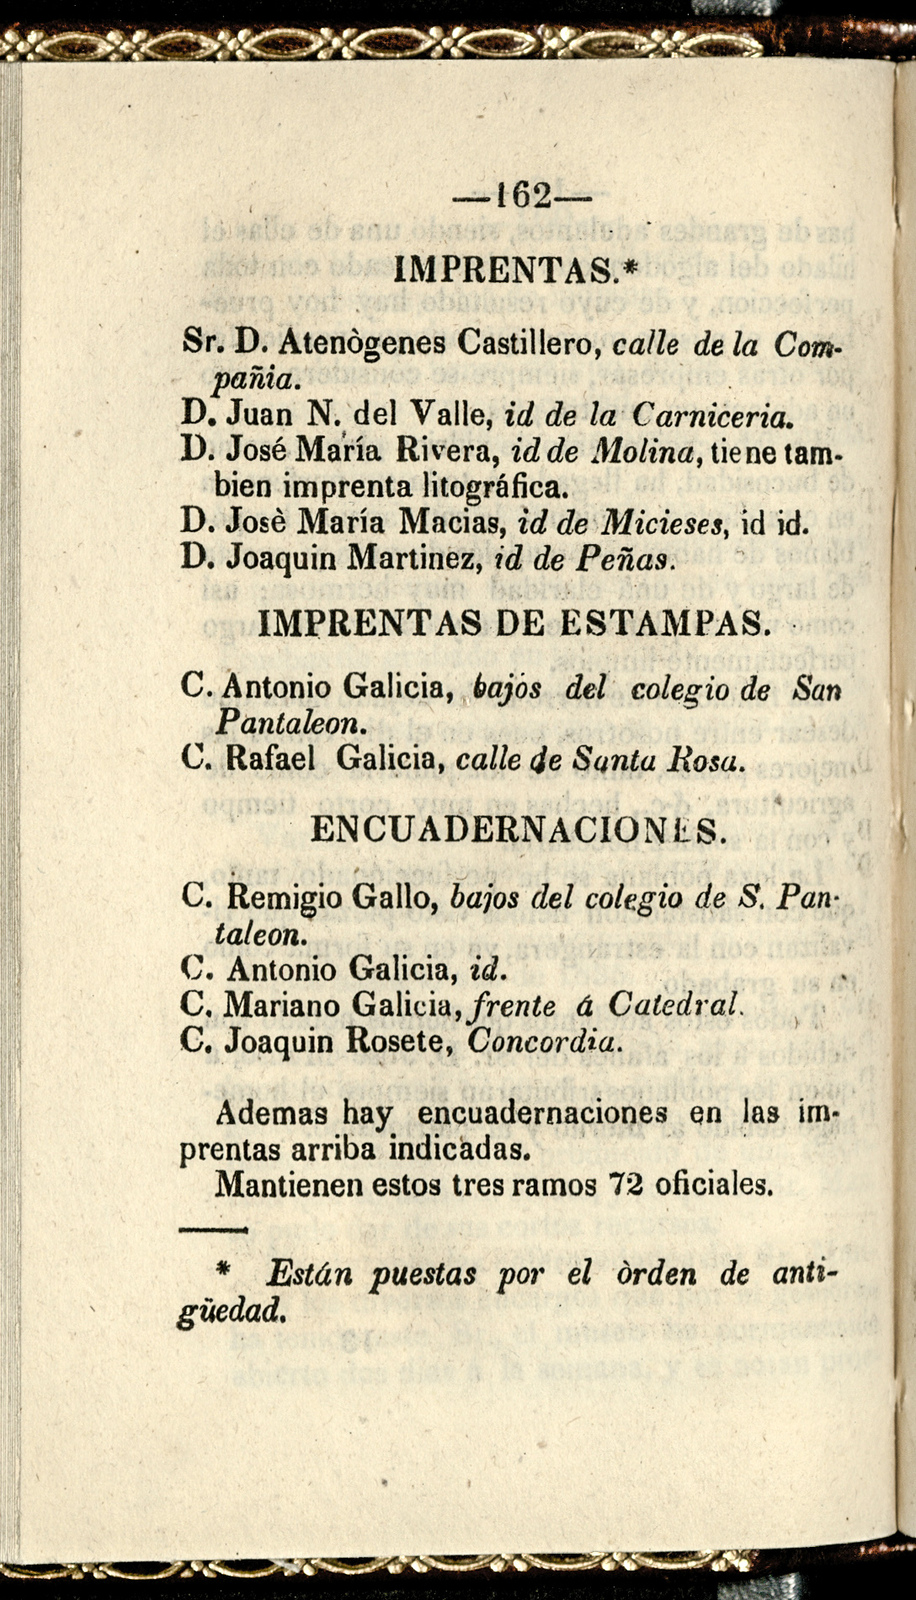 Guia de forasteros de la capital de Puebla, para el año de 1852 / dispuesta por Juan N. del Valle<br />
[80369]